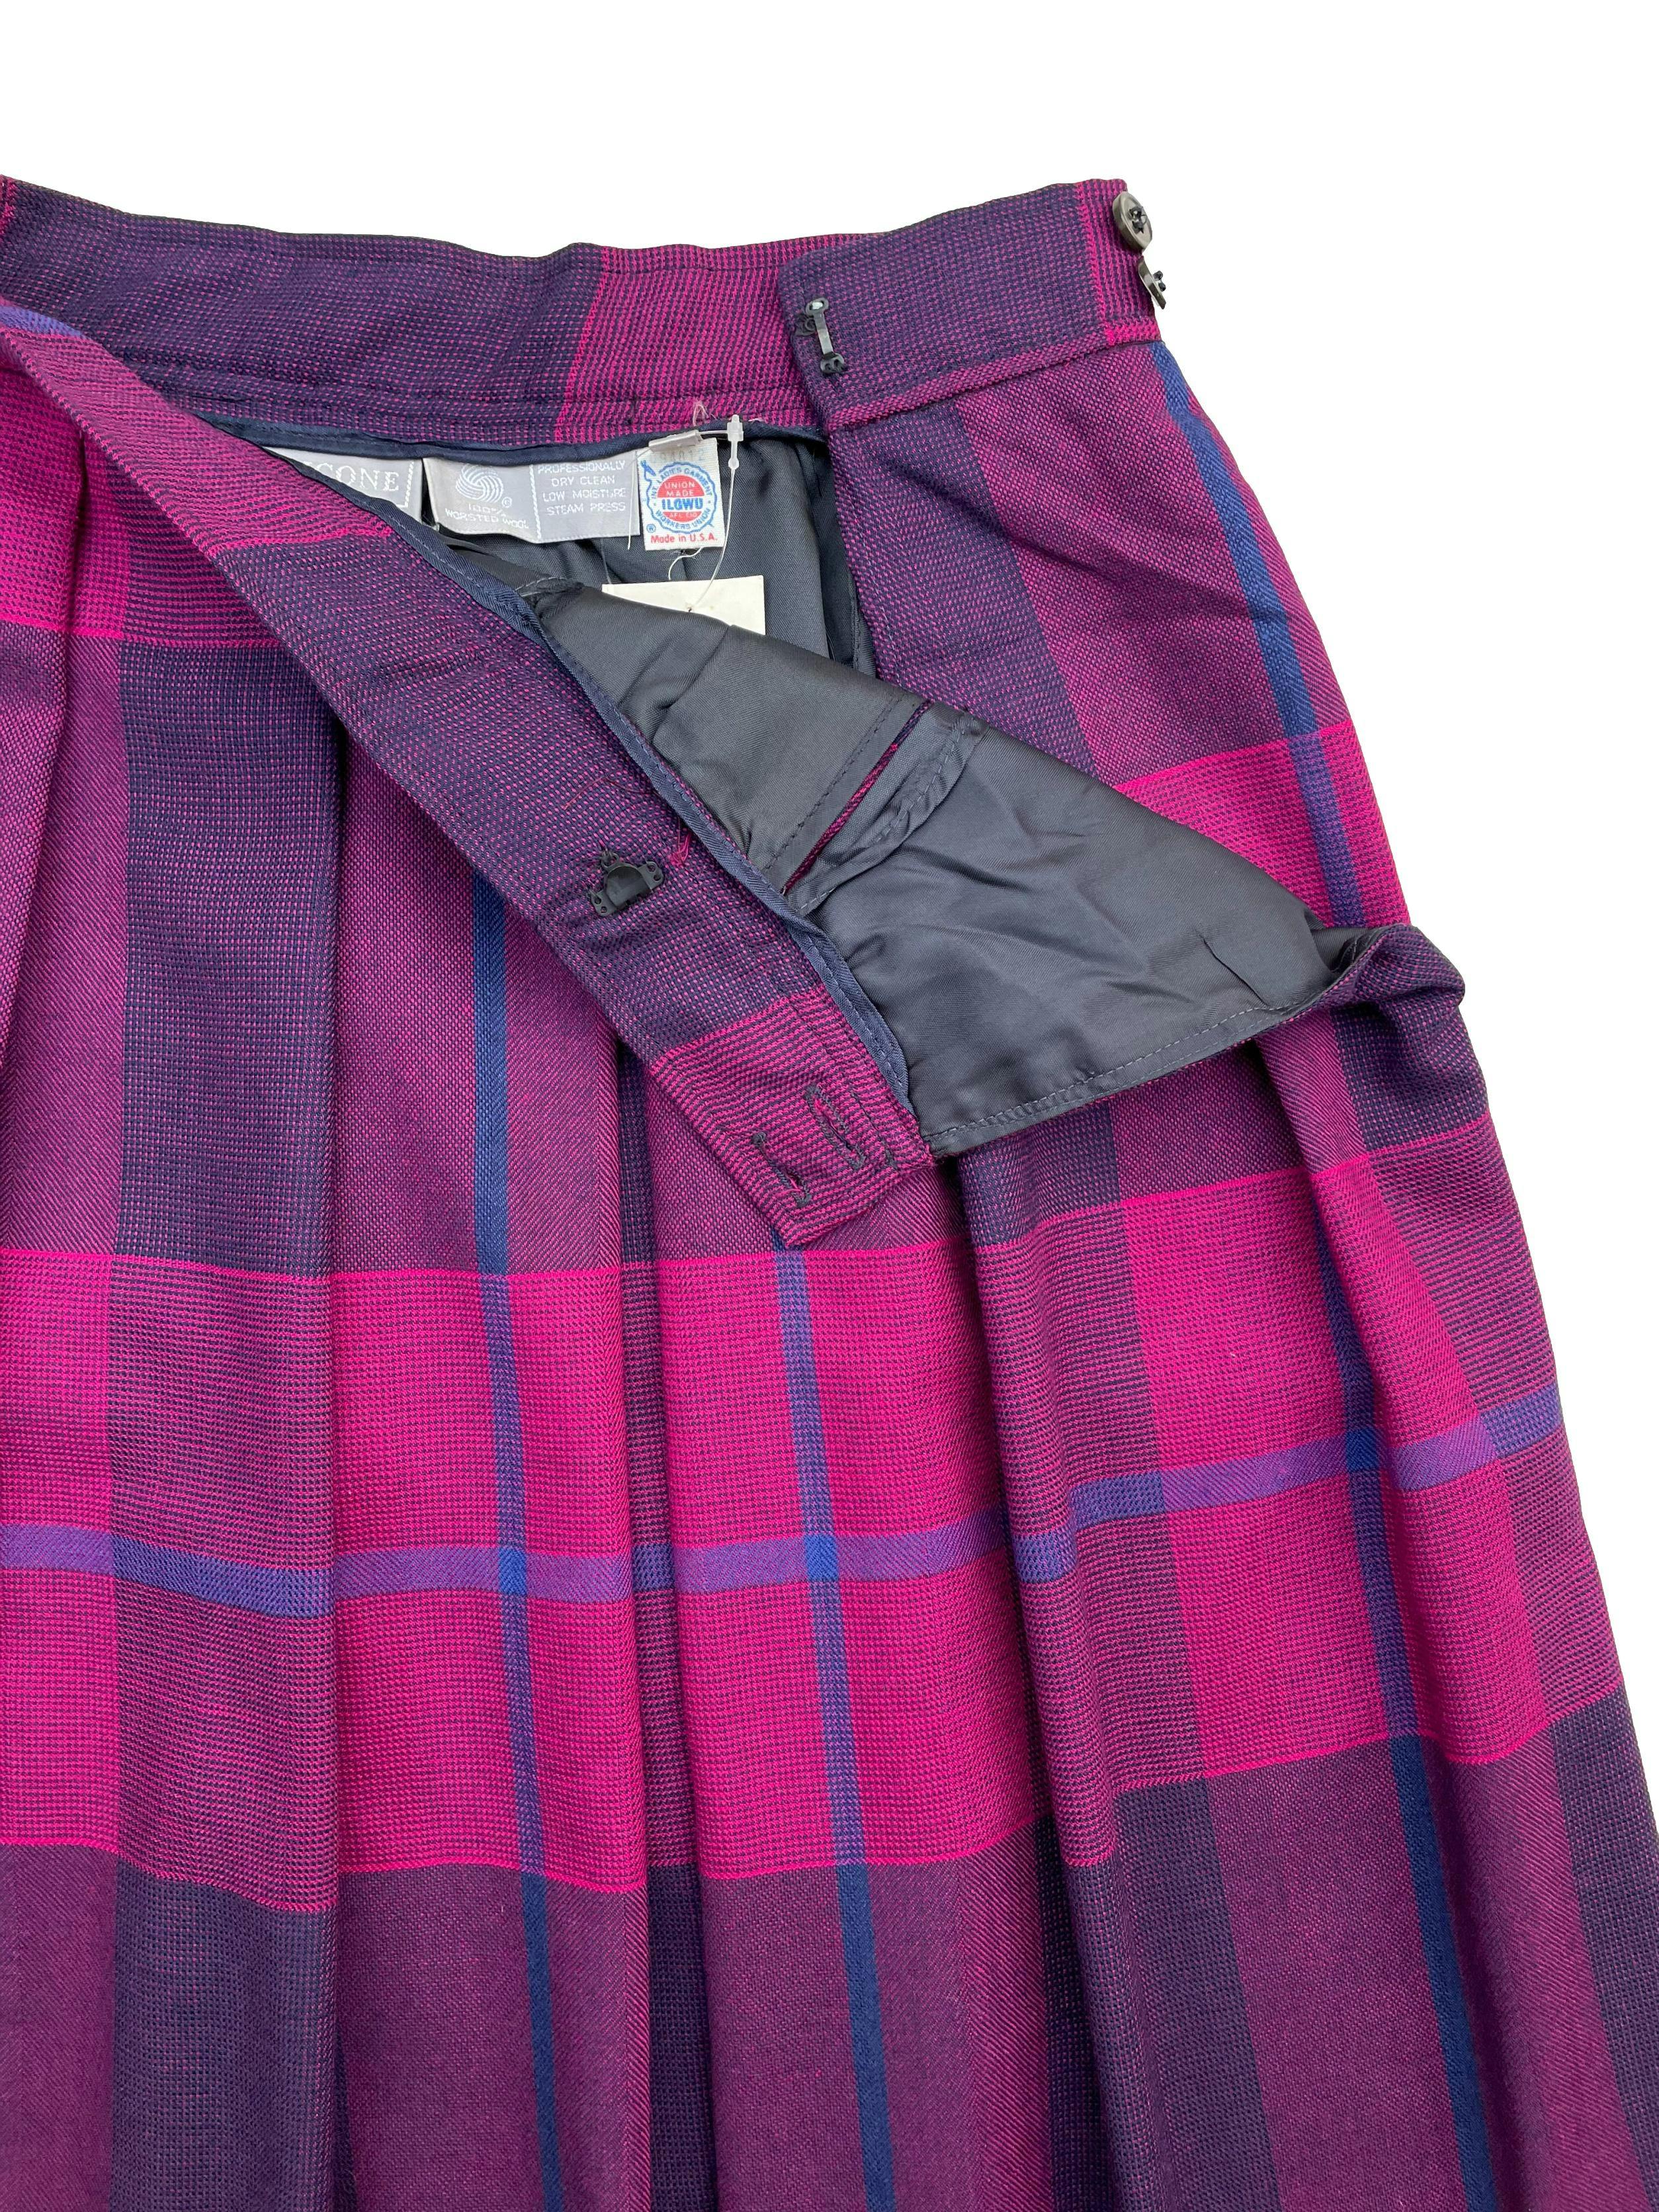 Falda vintage a cuadros escoceses en fucsia y morado ,100%lana con forro y bolsillos laterales. Cintura 66cm ,Largo 70cm.